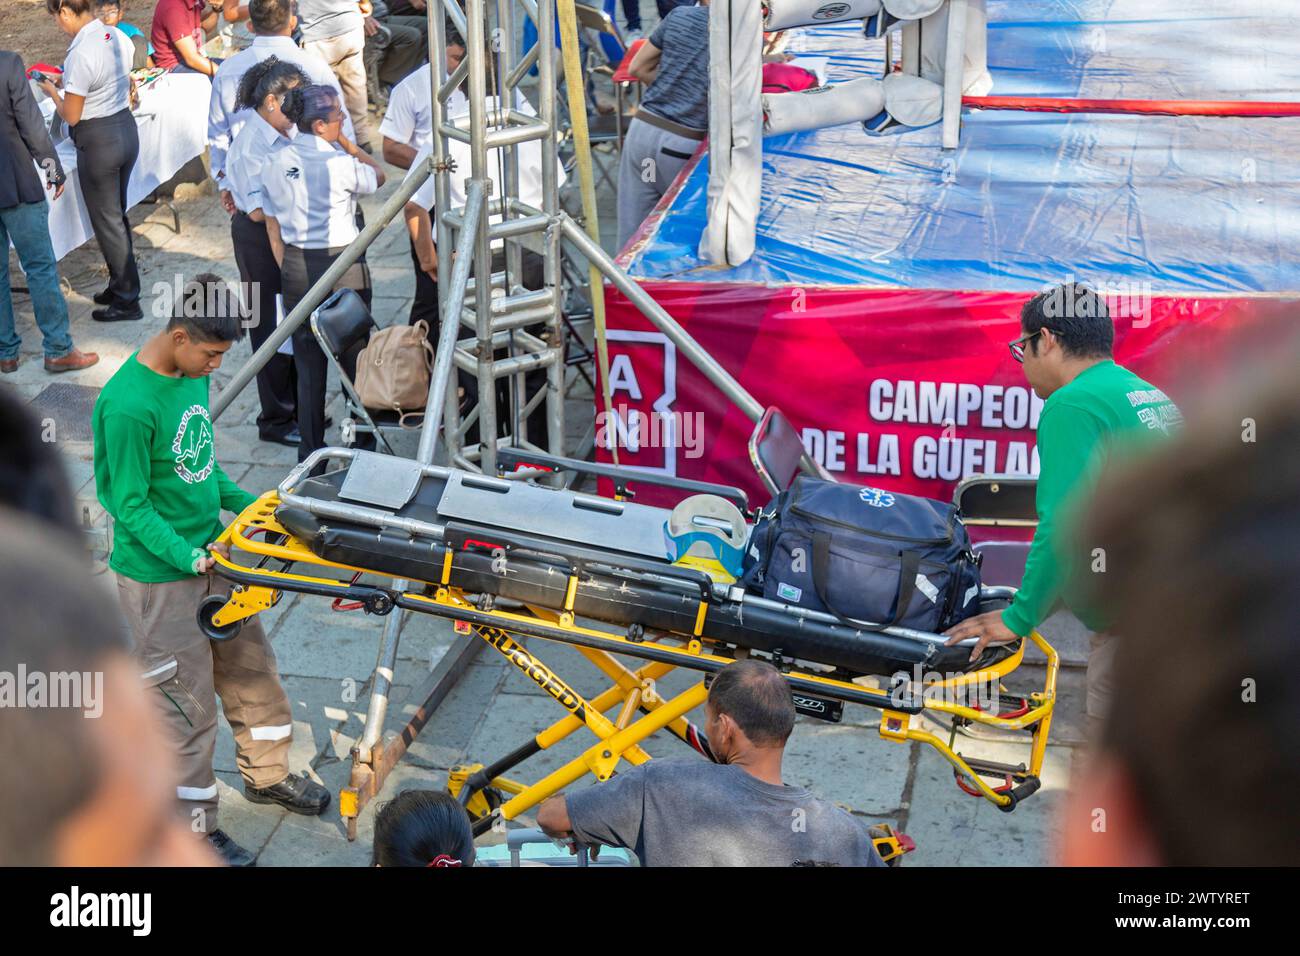 Oaxaca, Mexiko - medizinische Notfalltechniker bringen eine Trage und medizinische Ausrüstung, falls sie während der Jugendboxspiele benötigt wird. Stockfoto